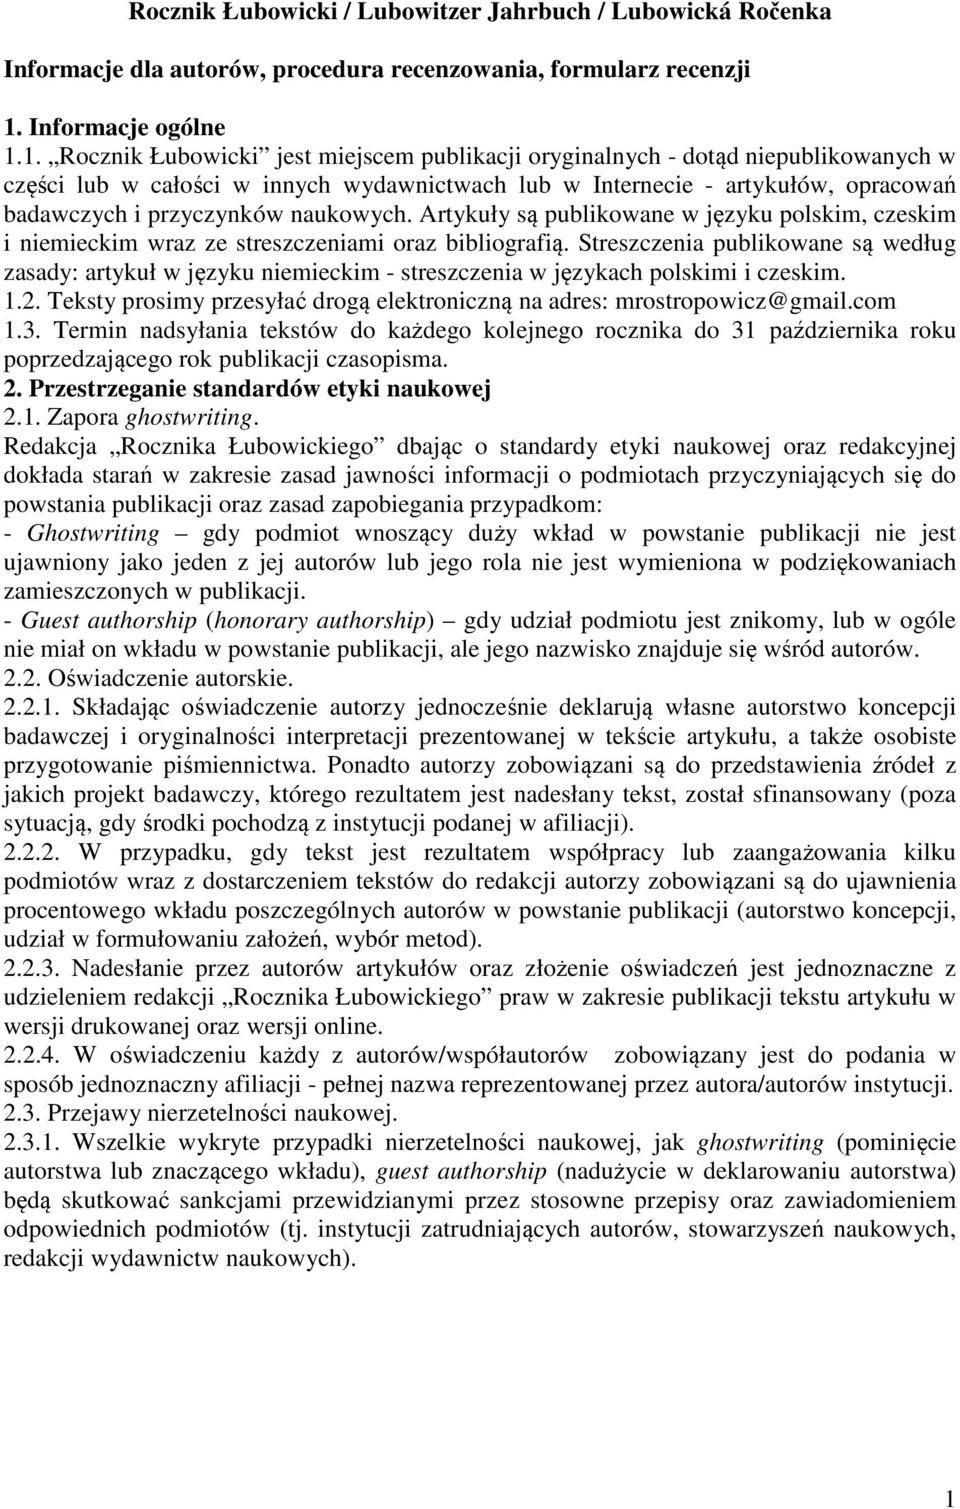 1. Rocznik Łubowicki jest miejscem publikacji oryginalnych - dotąd niepublikowanych w części lub w całości w innych wydawnictwach lub w Internecie - artykułów, opracowań badawczych i przyczynków